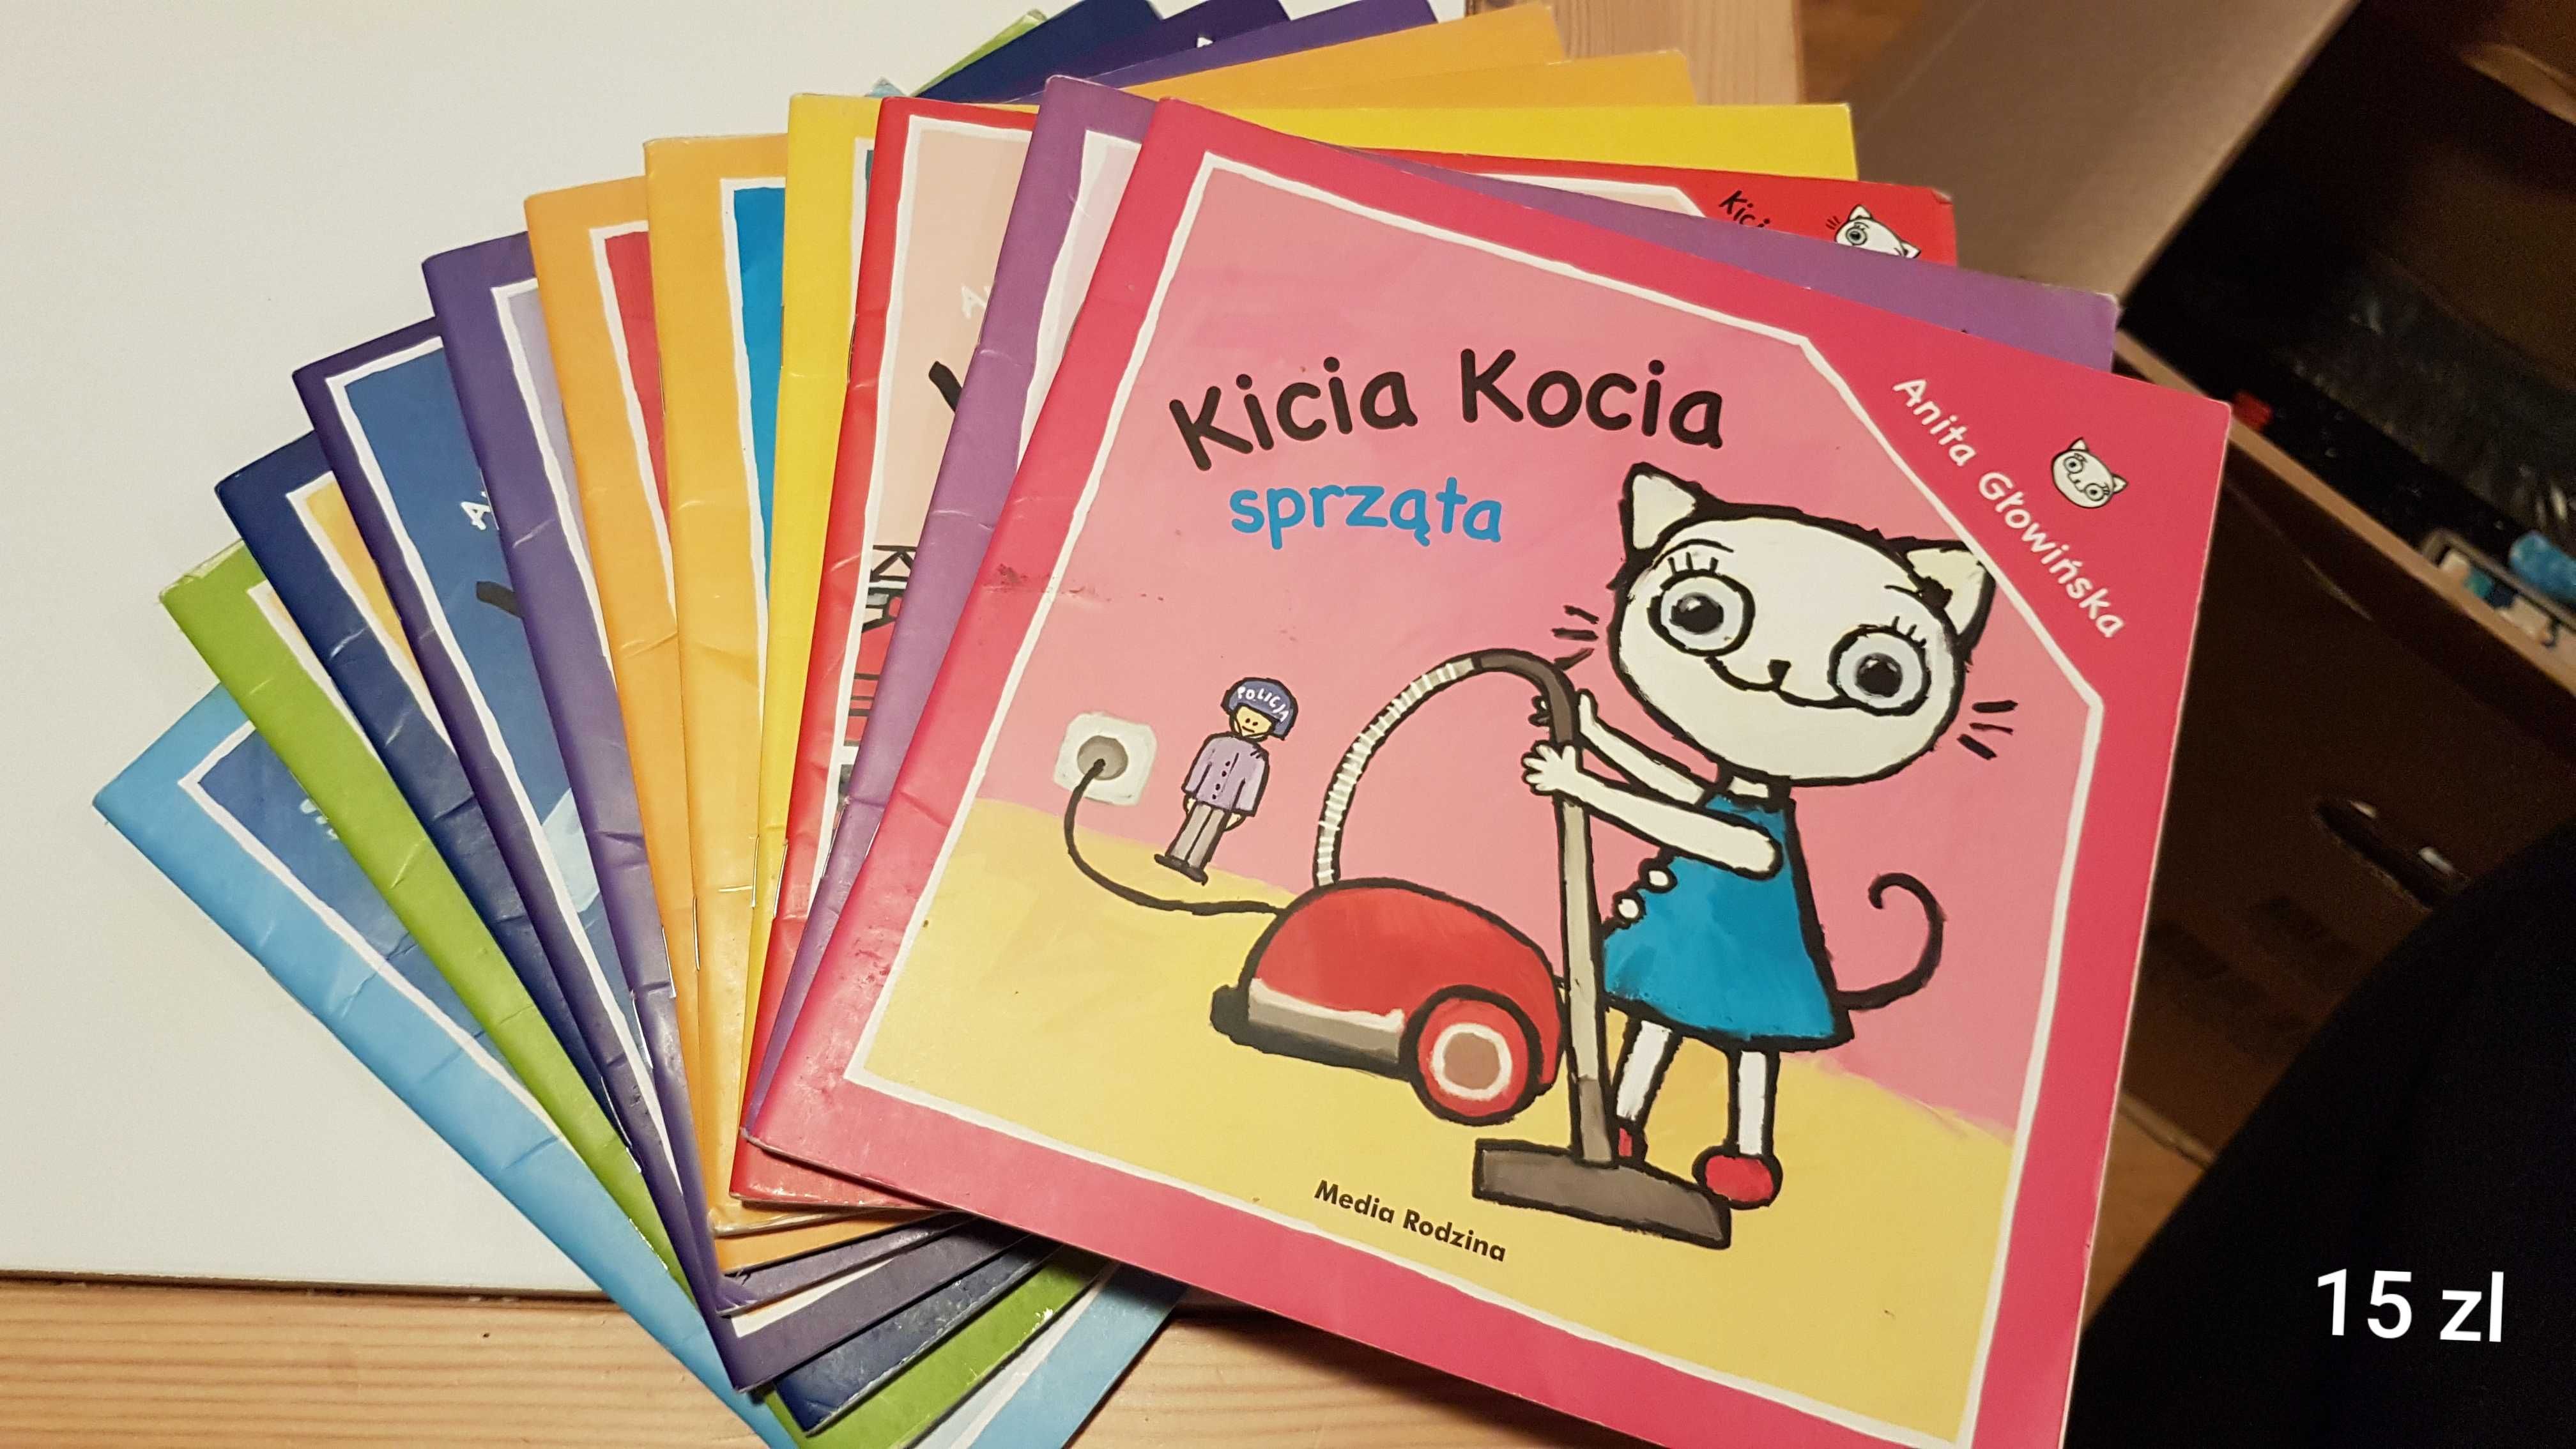 Książki dla dzieci od 1 do 15 zł